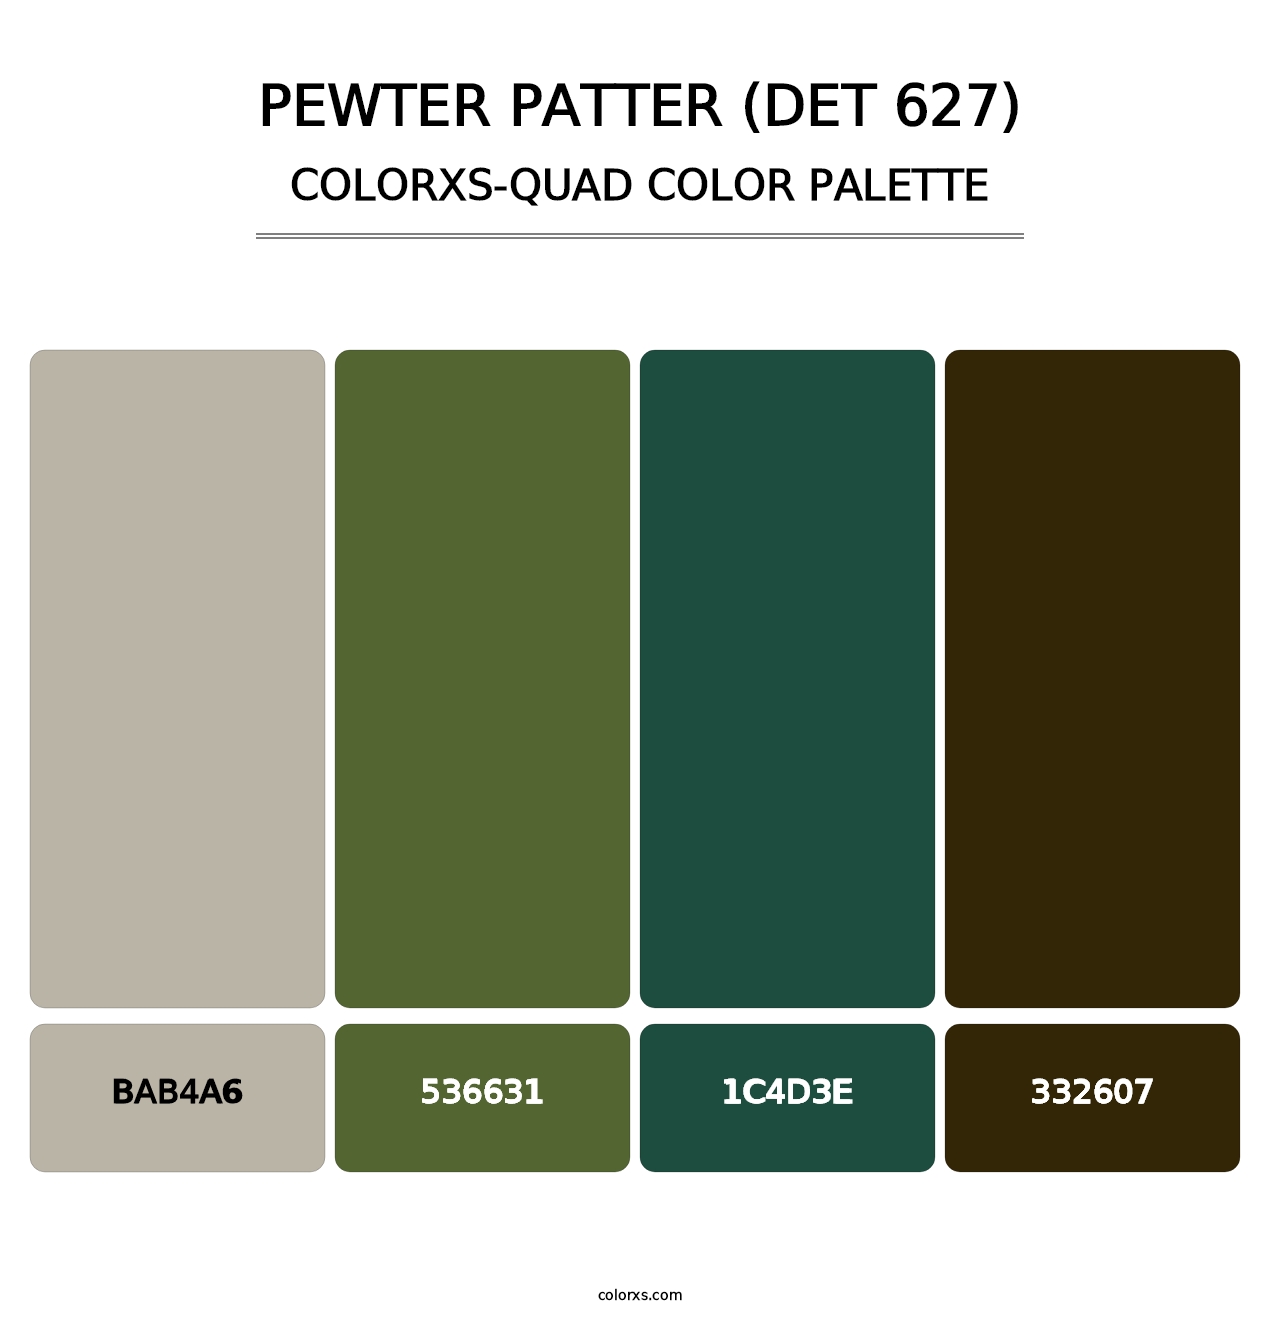 Pewter Patter (DET 627) - Colorxs Quad Palette